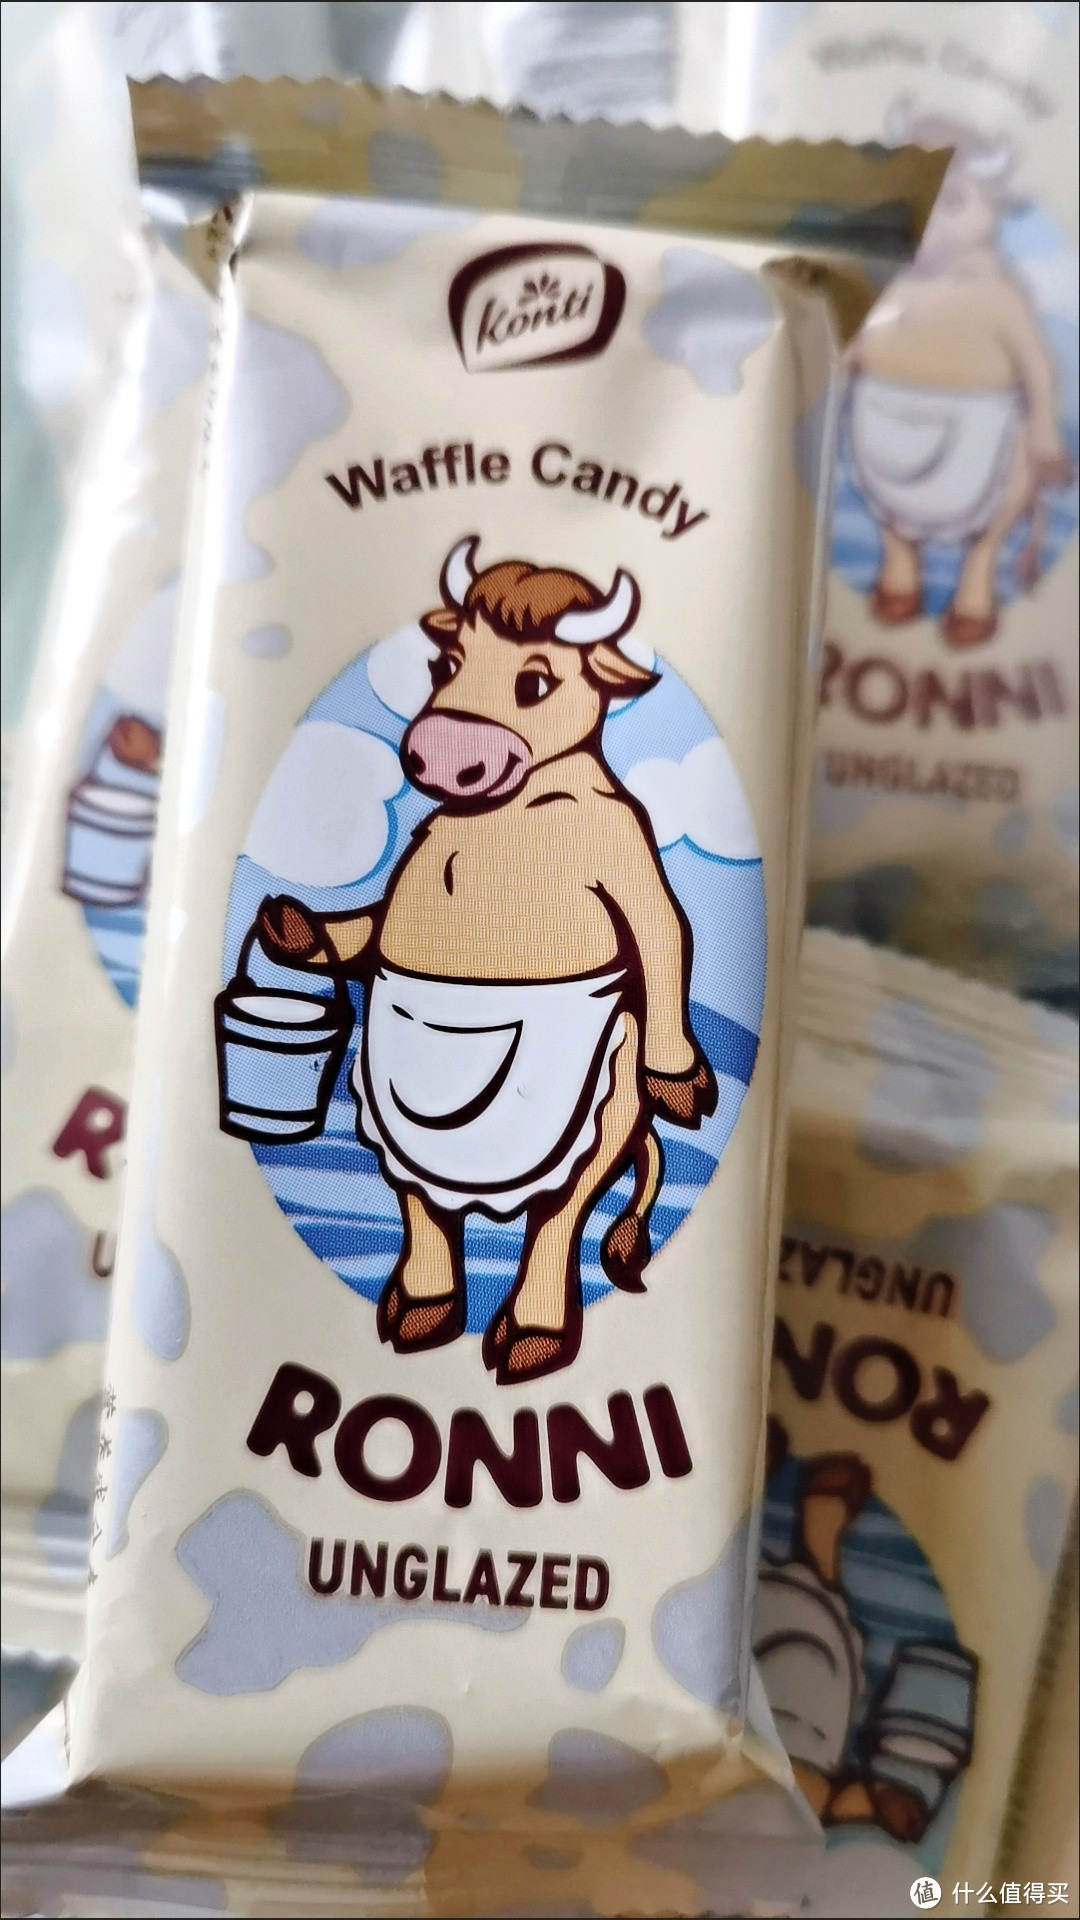 【分享】KONTI康吉大牛牛奶味夹心威化休闲零食-甜而不腻的美味享受